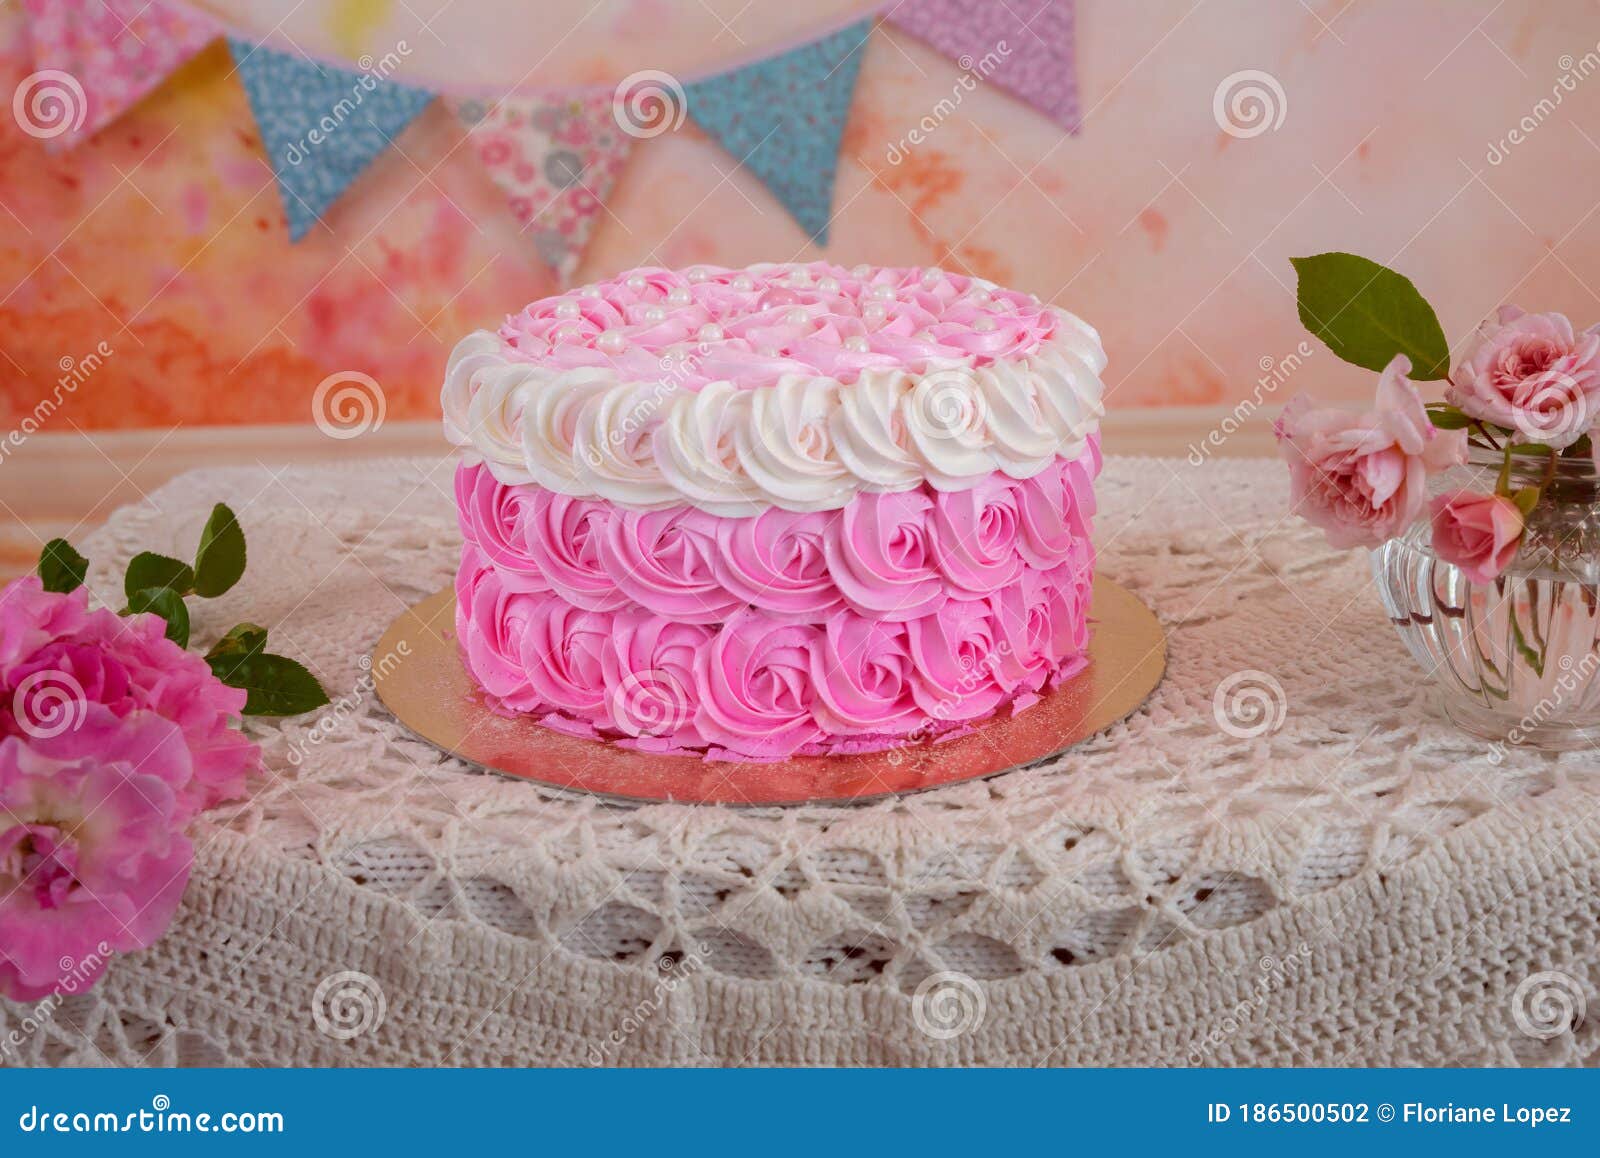 Cake design for girl